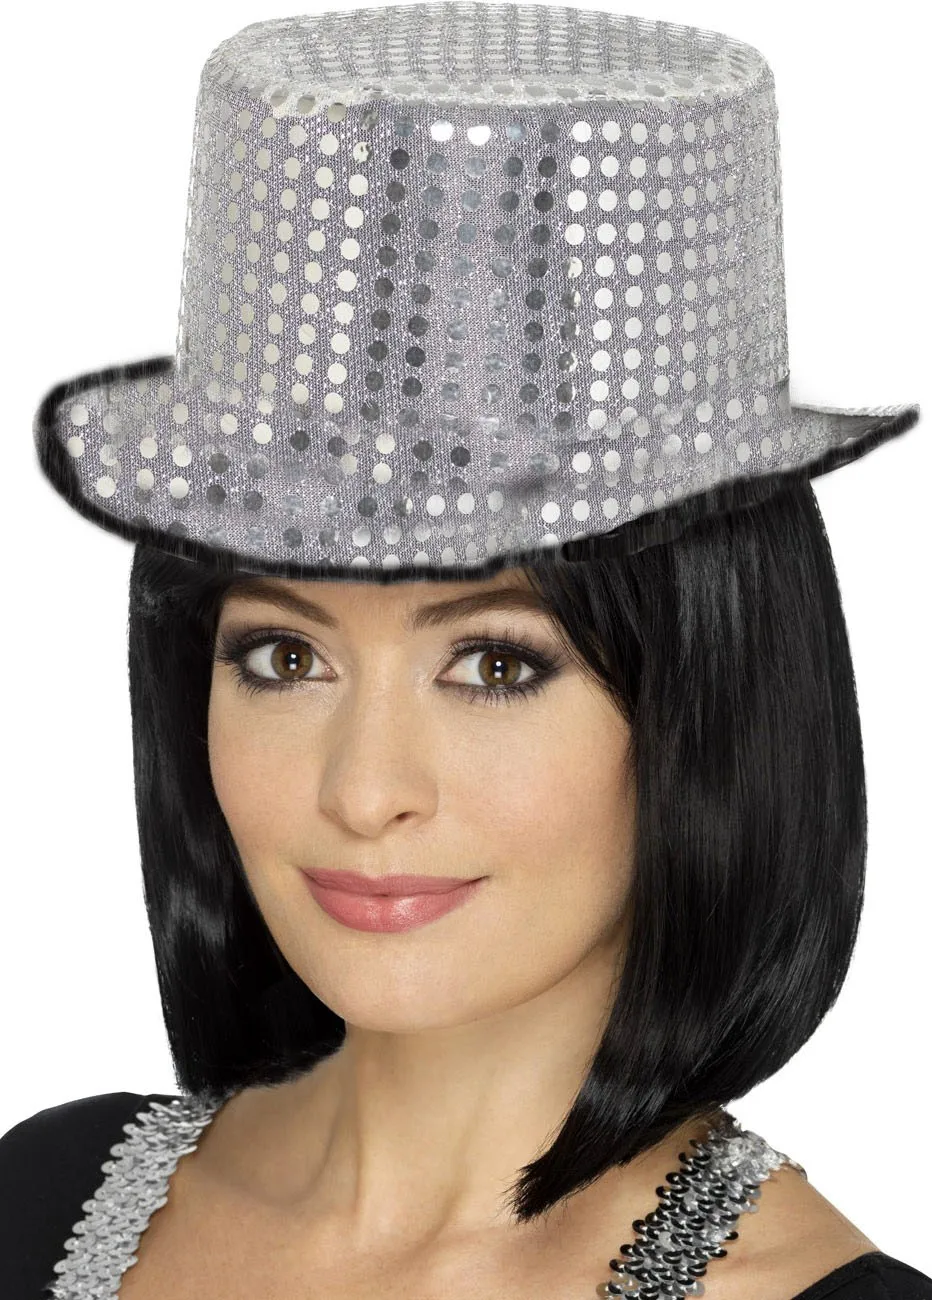 

Шляпа Федора для взрослых с блестками и вышивкой, черного и серебристого цвета